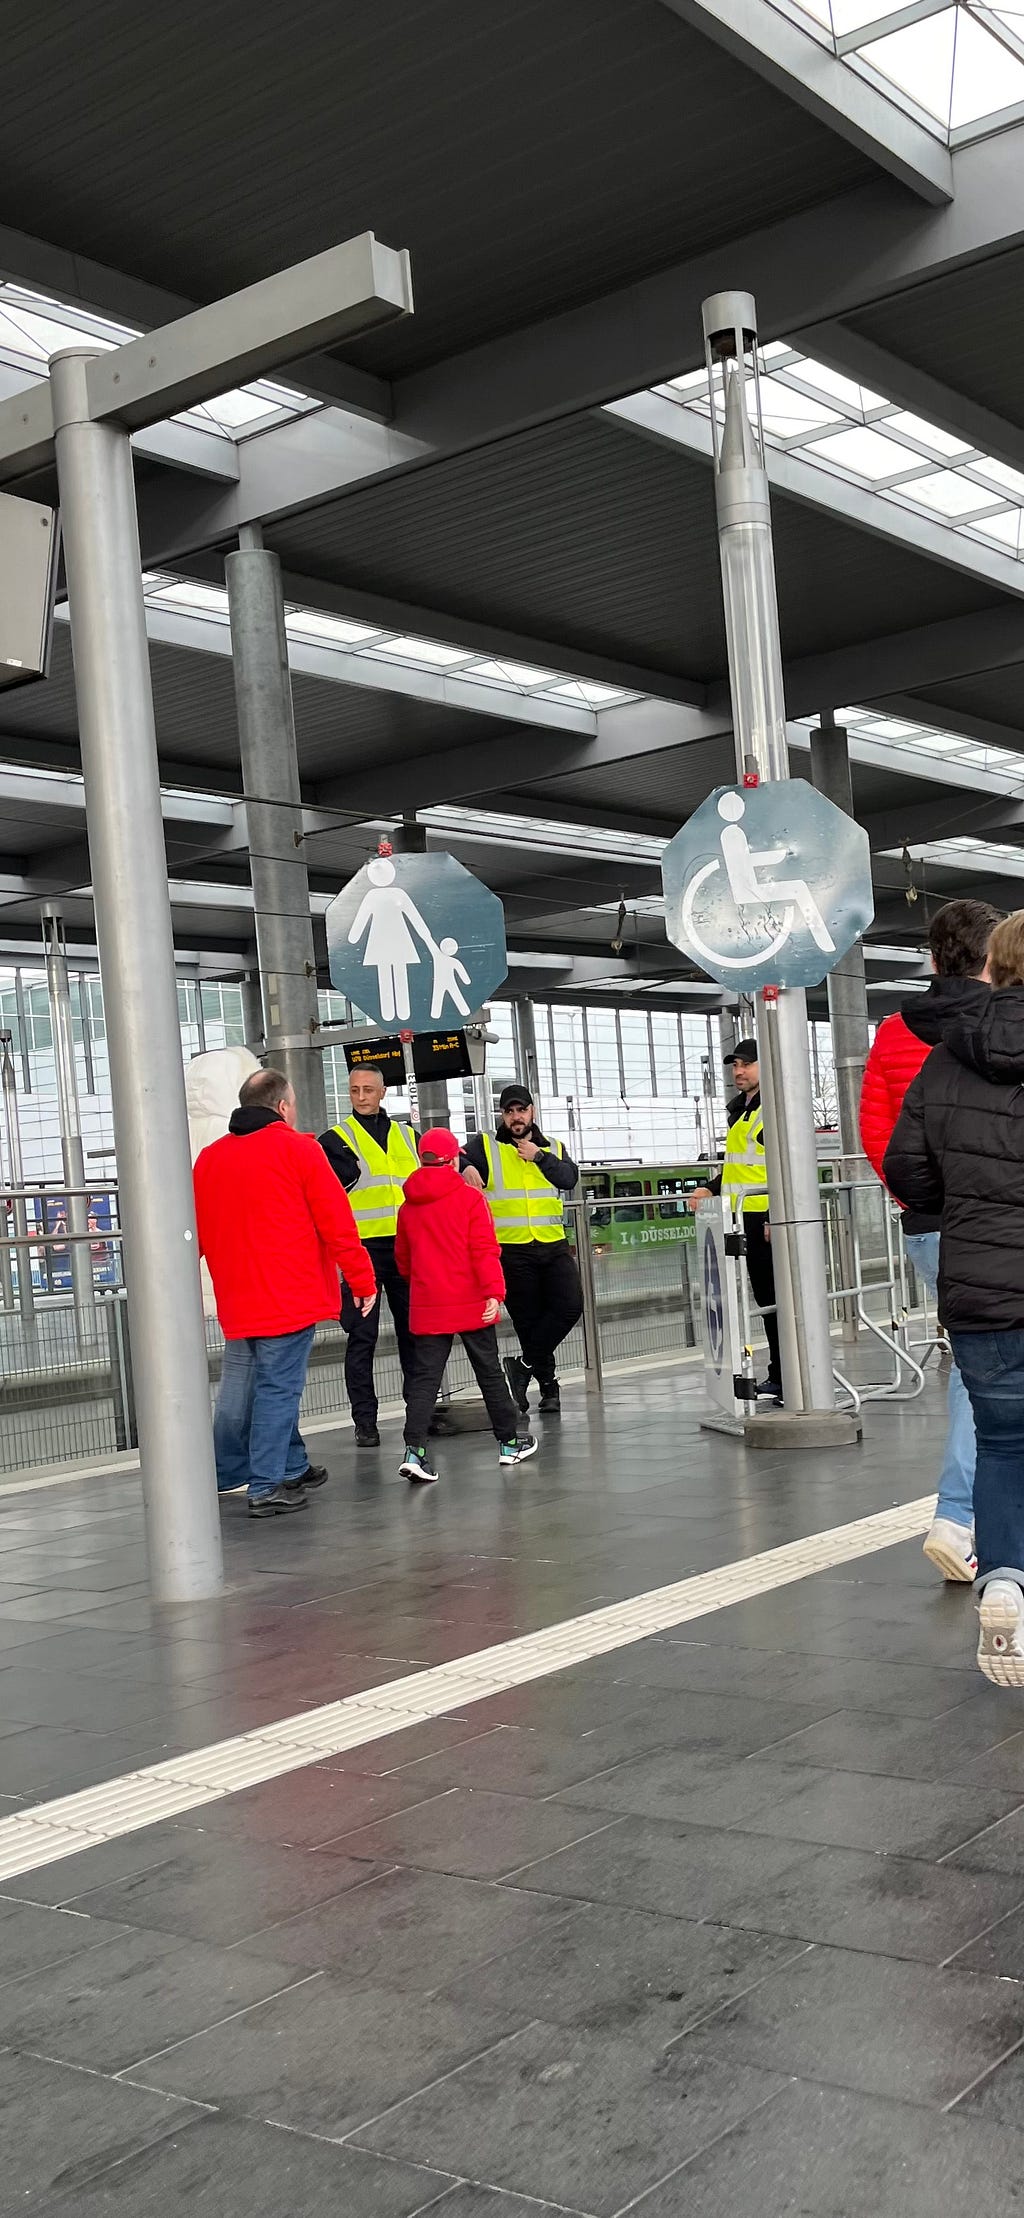 Ein mit drei Ordnern und zwei Schildern gekennzeichneter Eingang für Rollstuhlfahrer und Eltern mit Kind, um sicher und barrierefrei in die U-Bahn zu kommen